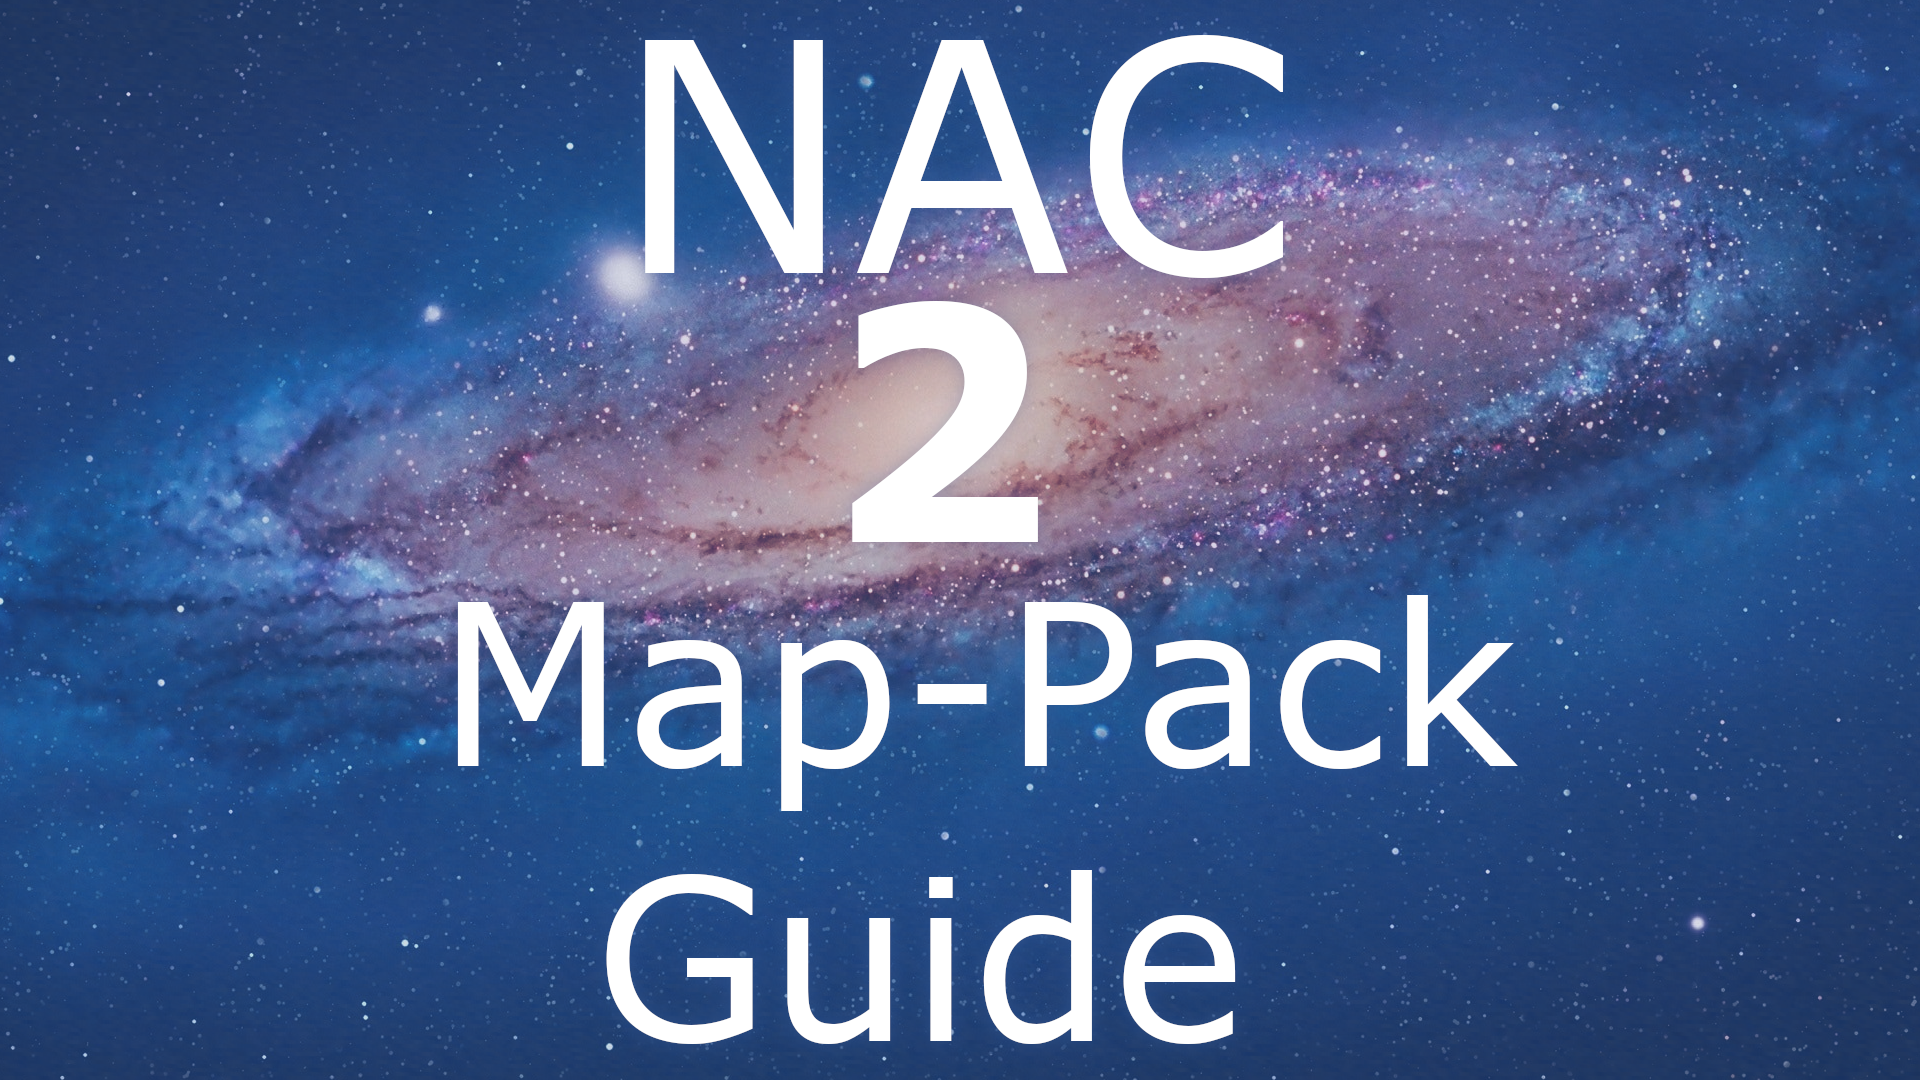 NAC2 Mappack Thumbnail 1080p.png